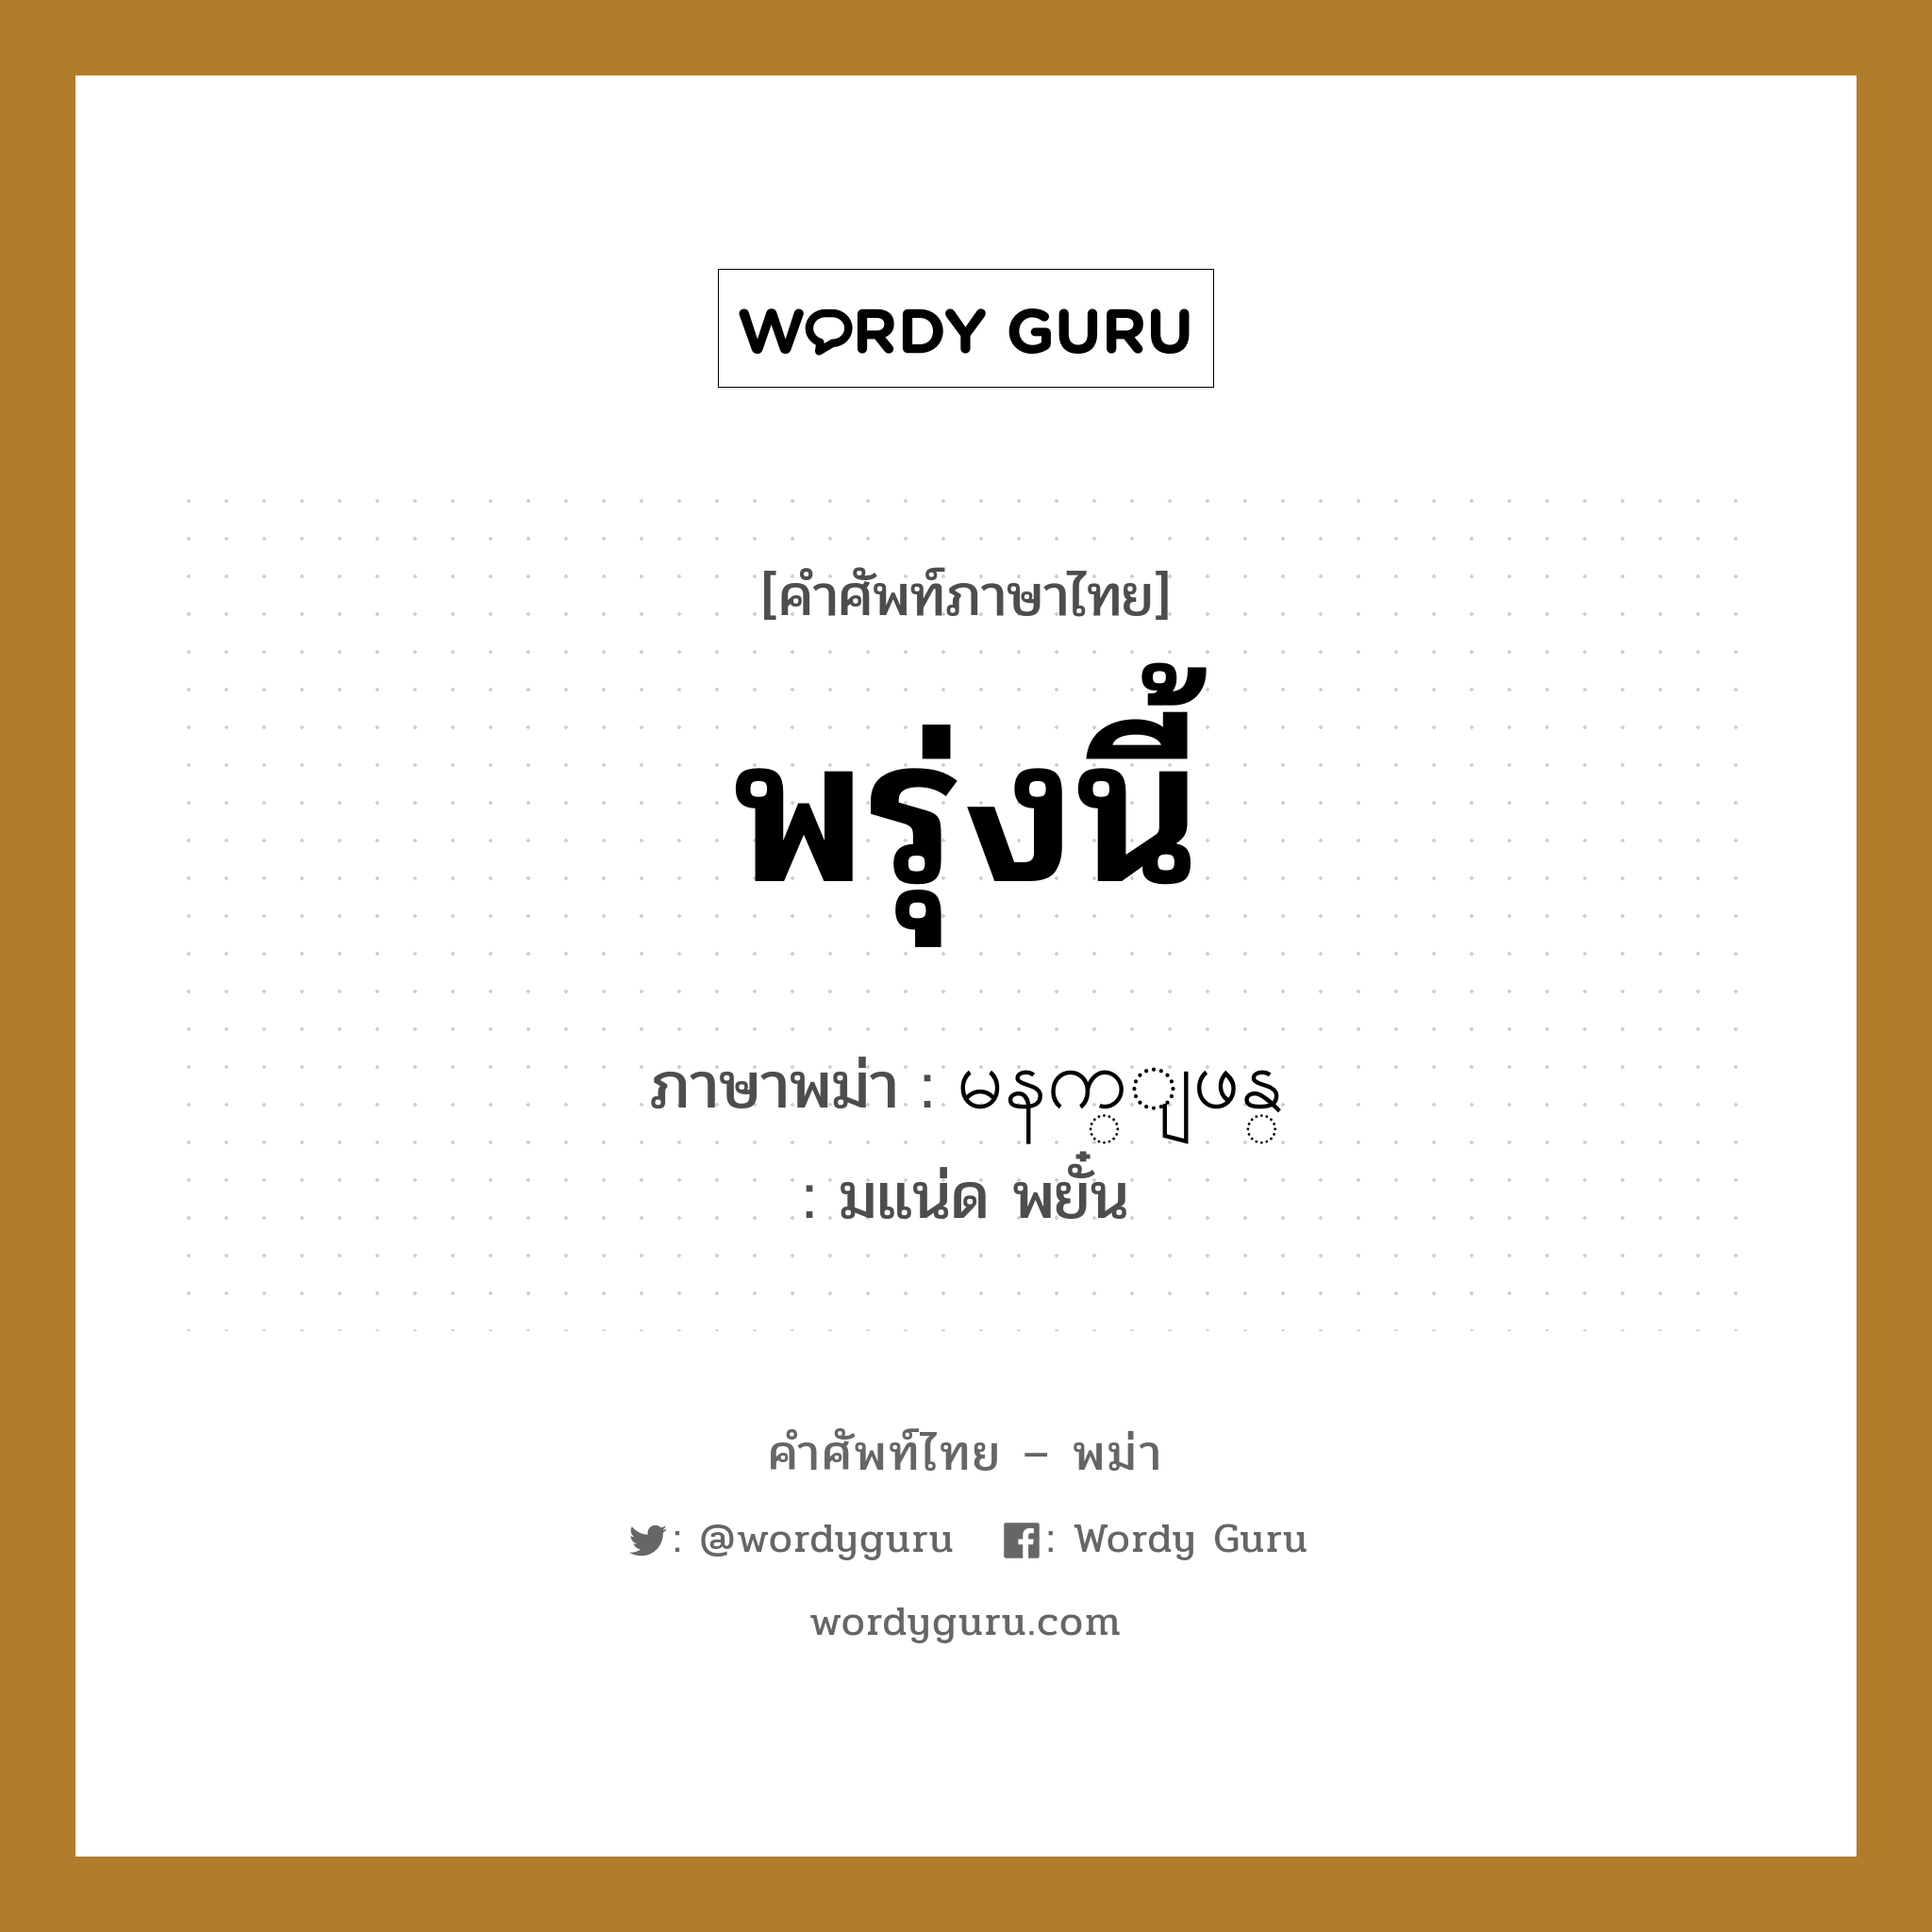 พรุ่งนี้ ภาษาพม่าคืออะไร, คำศัพท์ภาษาไทย - พม่า พรุ่งนี้ ภาษาพม่า မနက္ျဖန္ หมวด หมวดวัน เวลา มแน่ด พยั๋น หมวด หมวดวัน เวลา